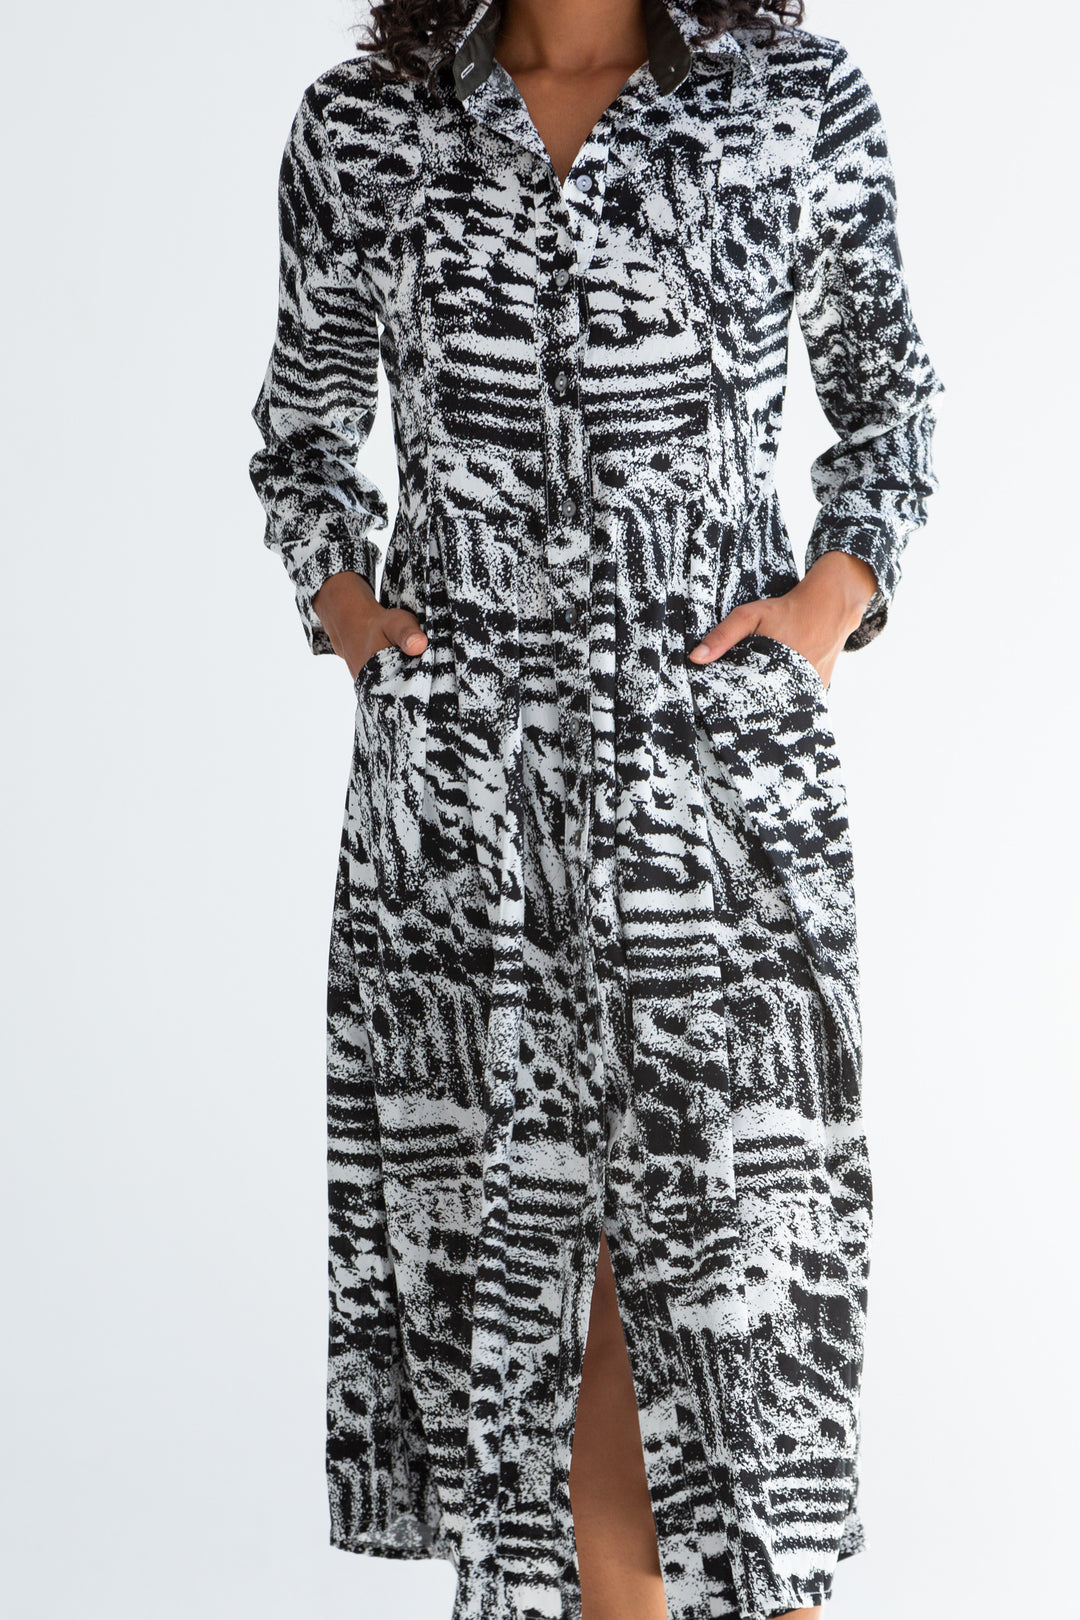 Delilah Dress Charcoal Print-DRESSES-kindacollection-Kinda